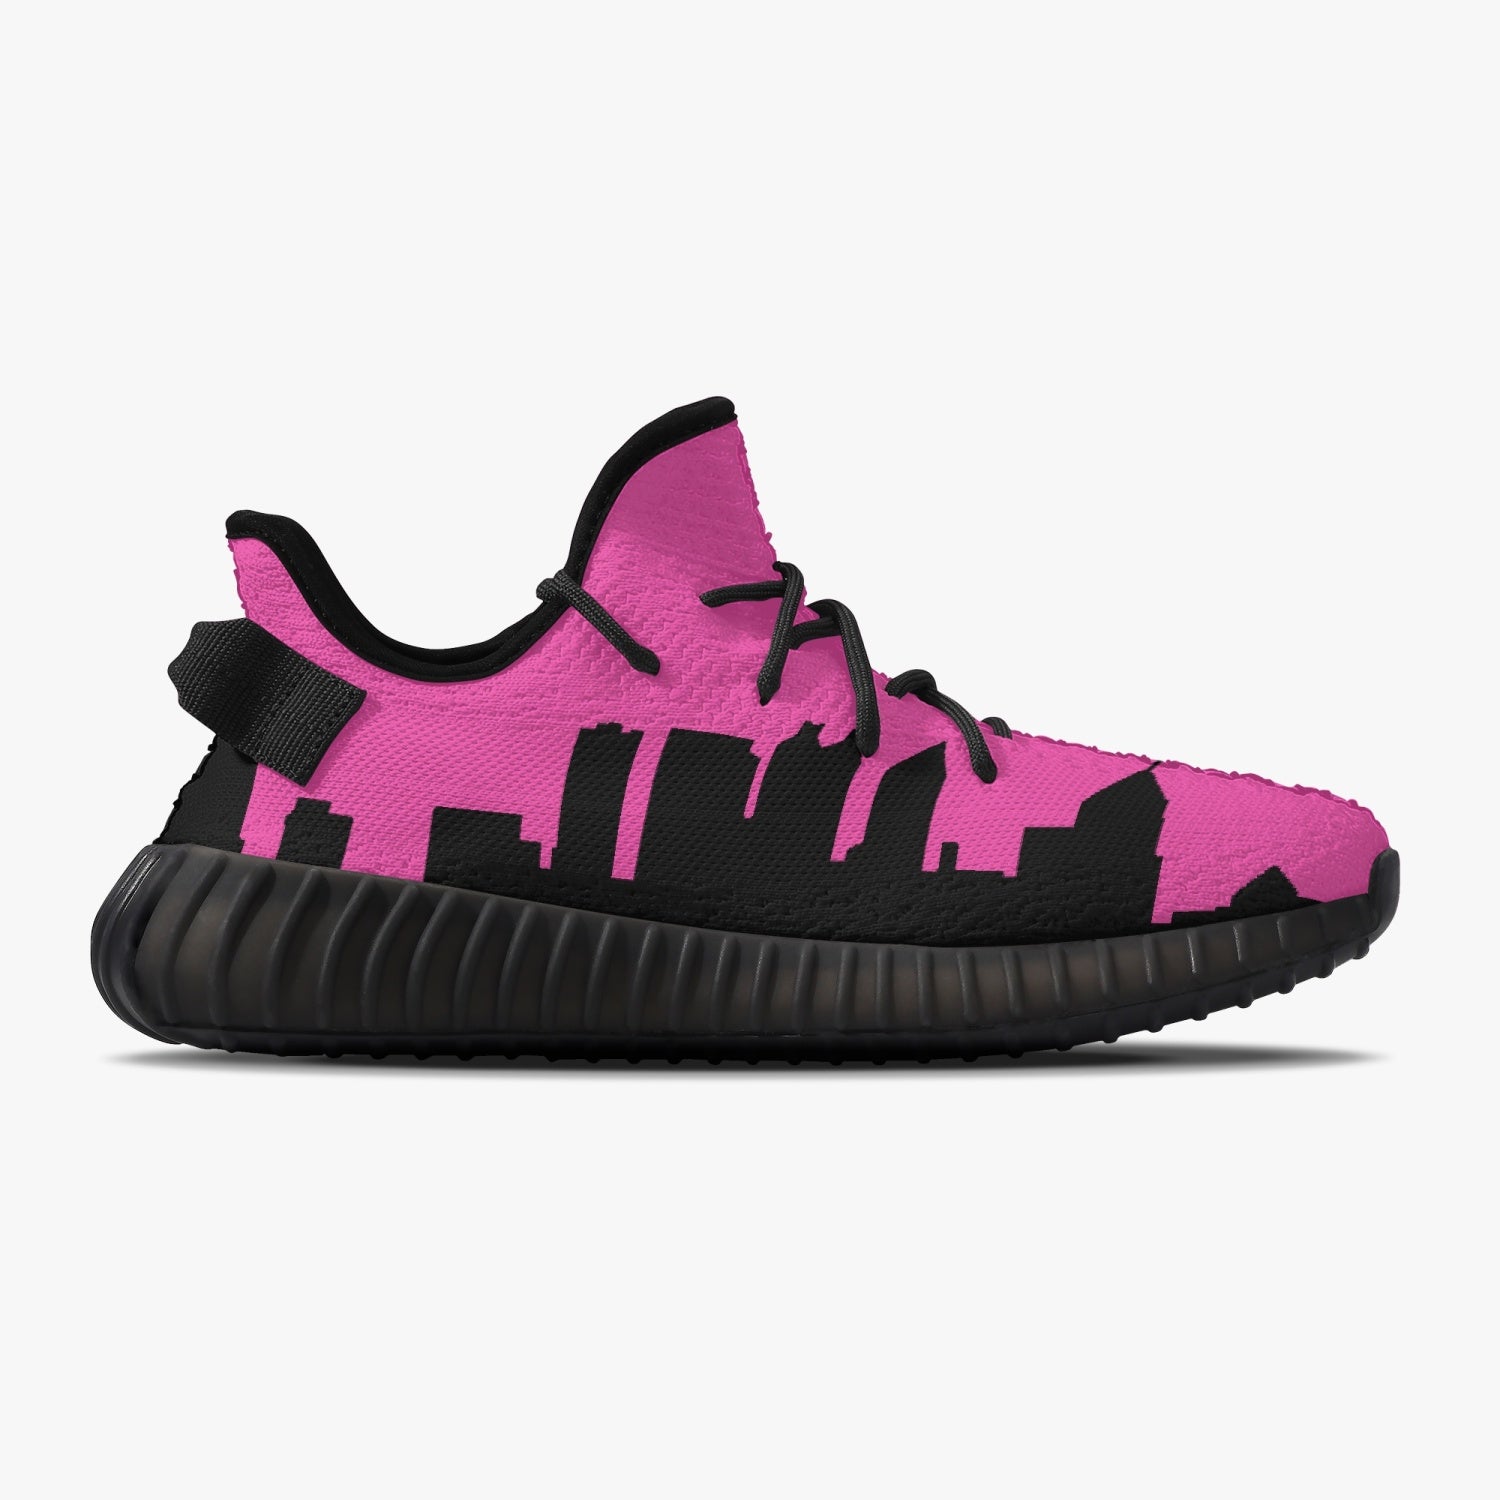 233. Neon Pink & Black Atlanta Skyline Adult Unisex Mesh Knit Sneakers